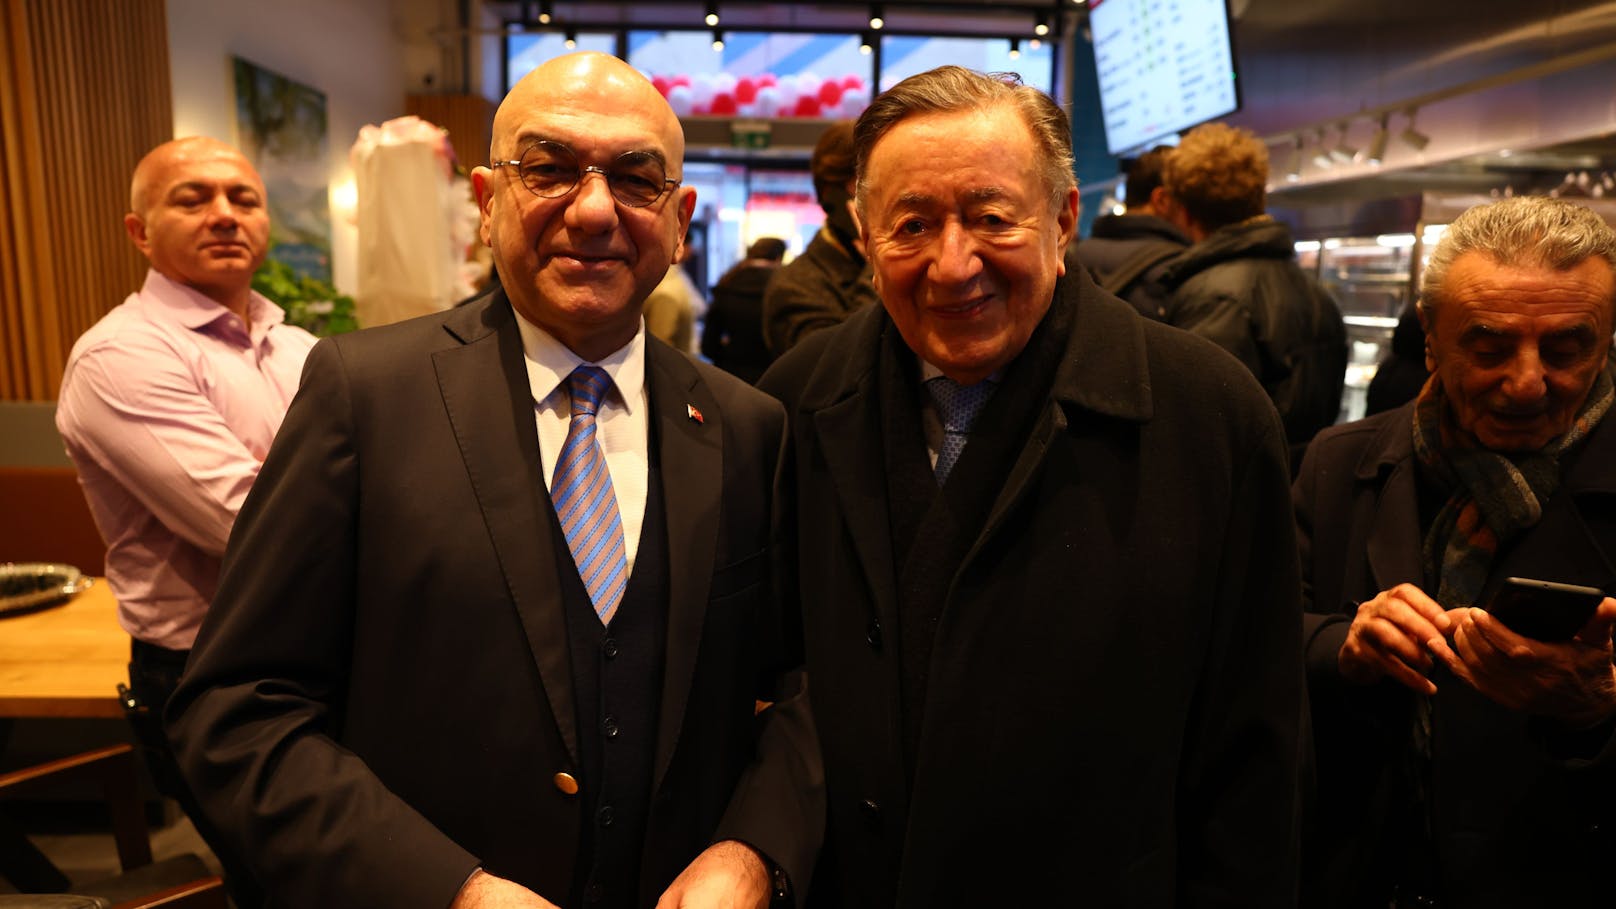 Prominente Kebab-Esser: Baulöwe Richard Lugner und der türkische Botschafter Ozan Ceyhun bei der Eröffnung des neuen Döner-Tempels.